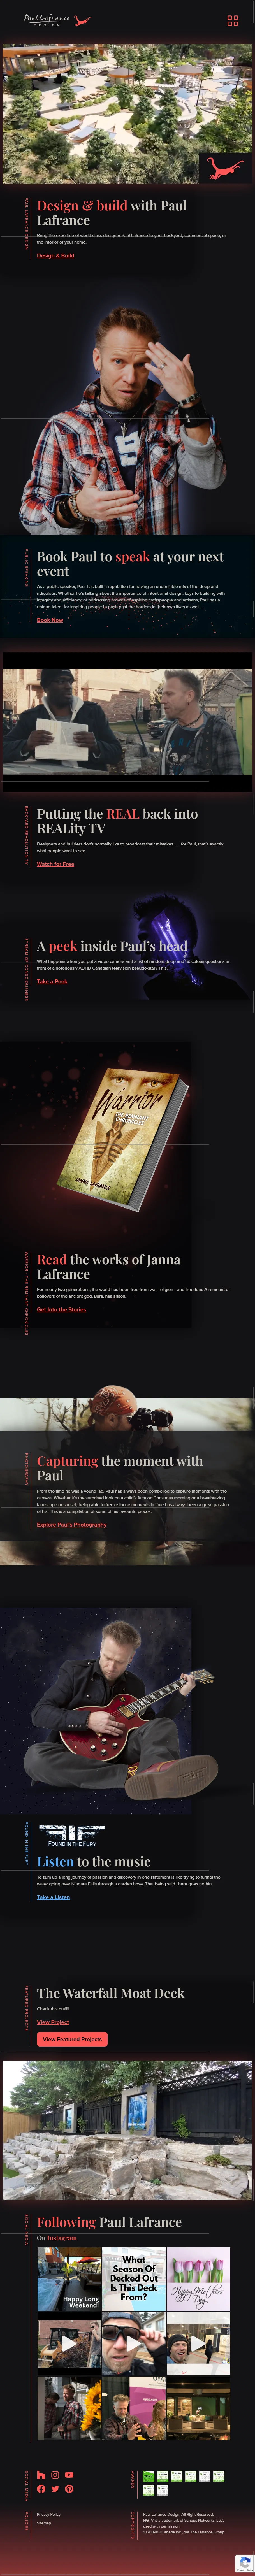 paul lafrance design website